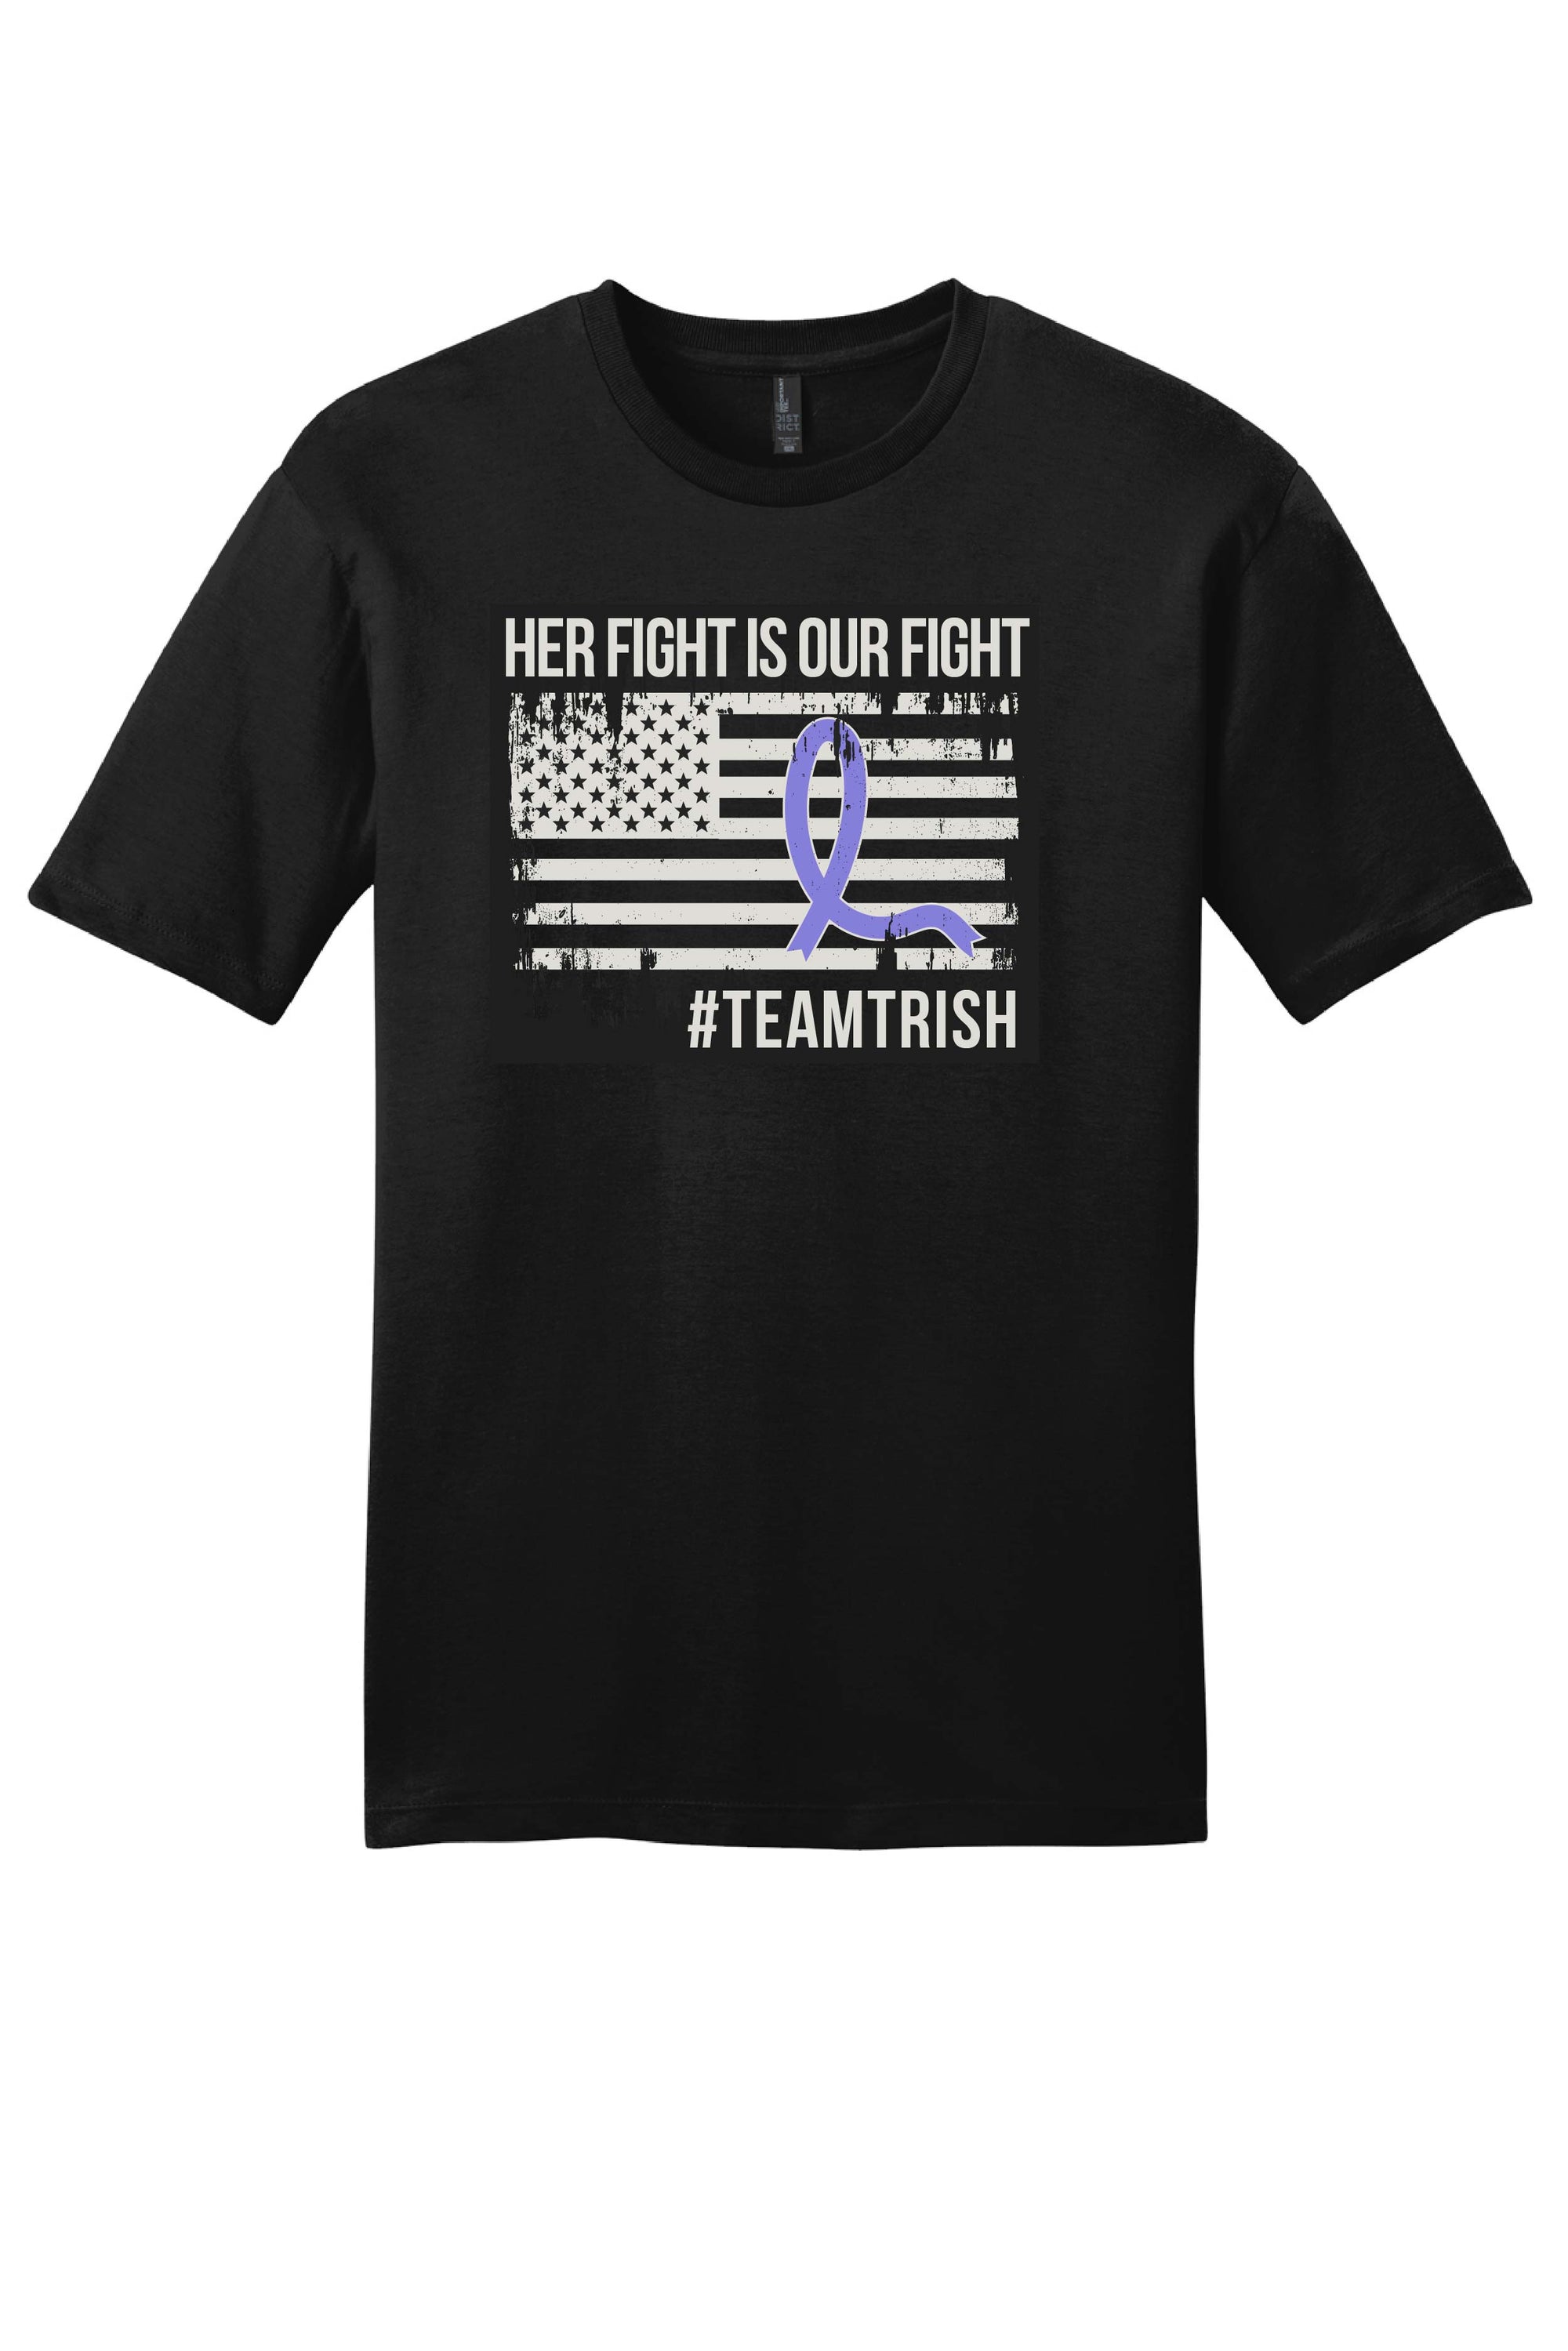 Team Trish Fundraiser Pre-Order